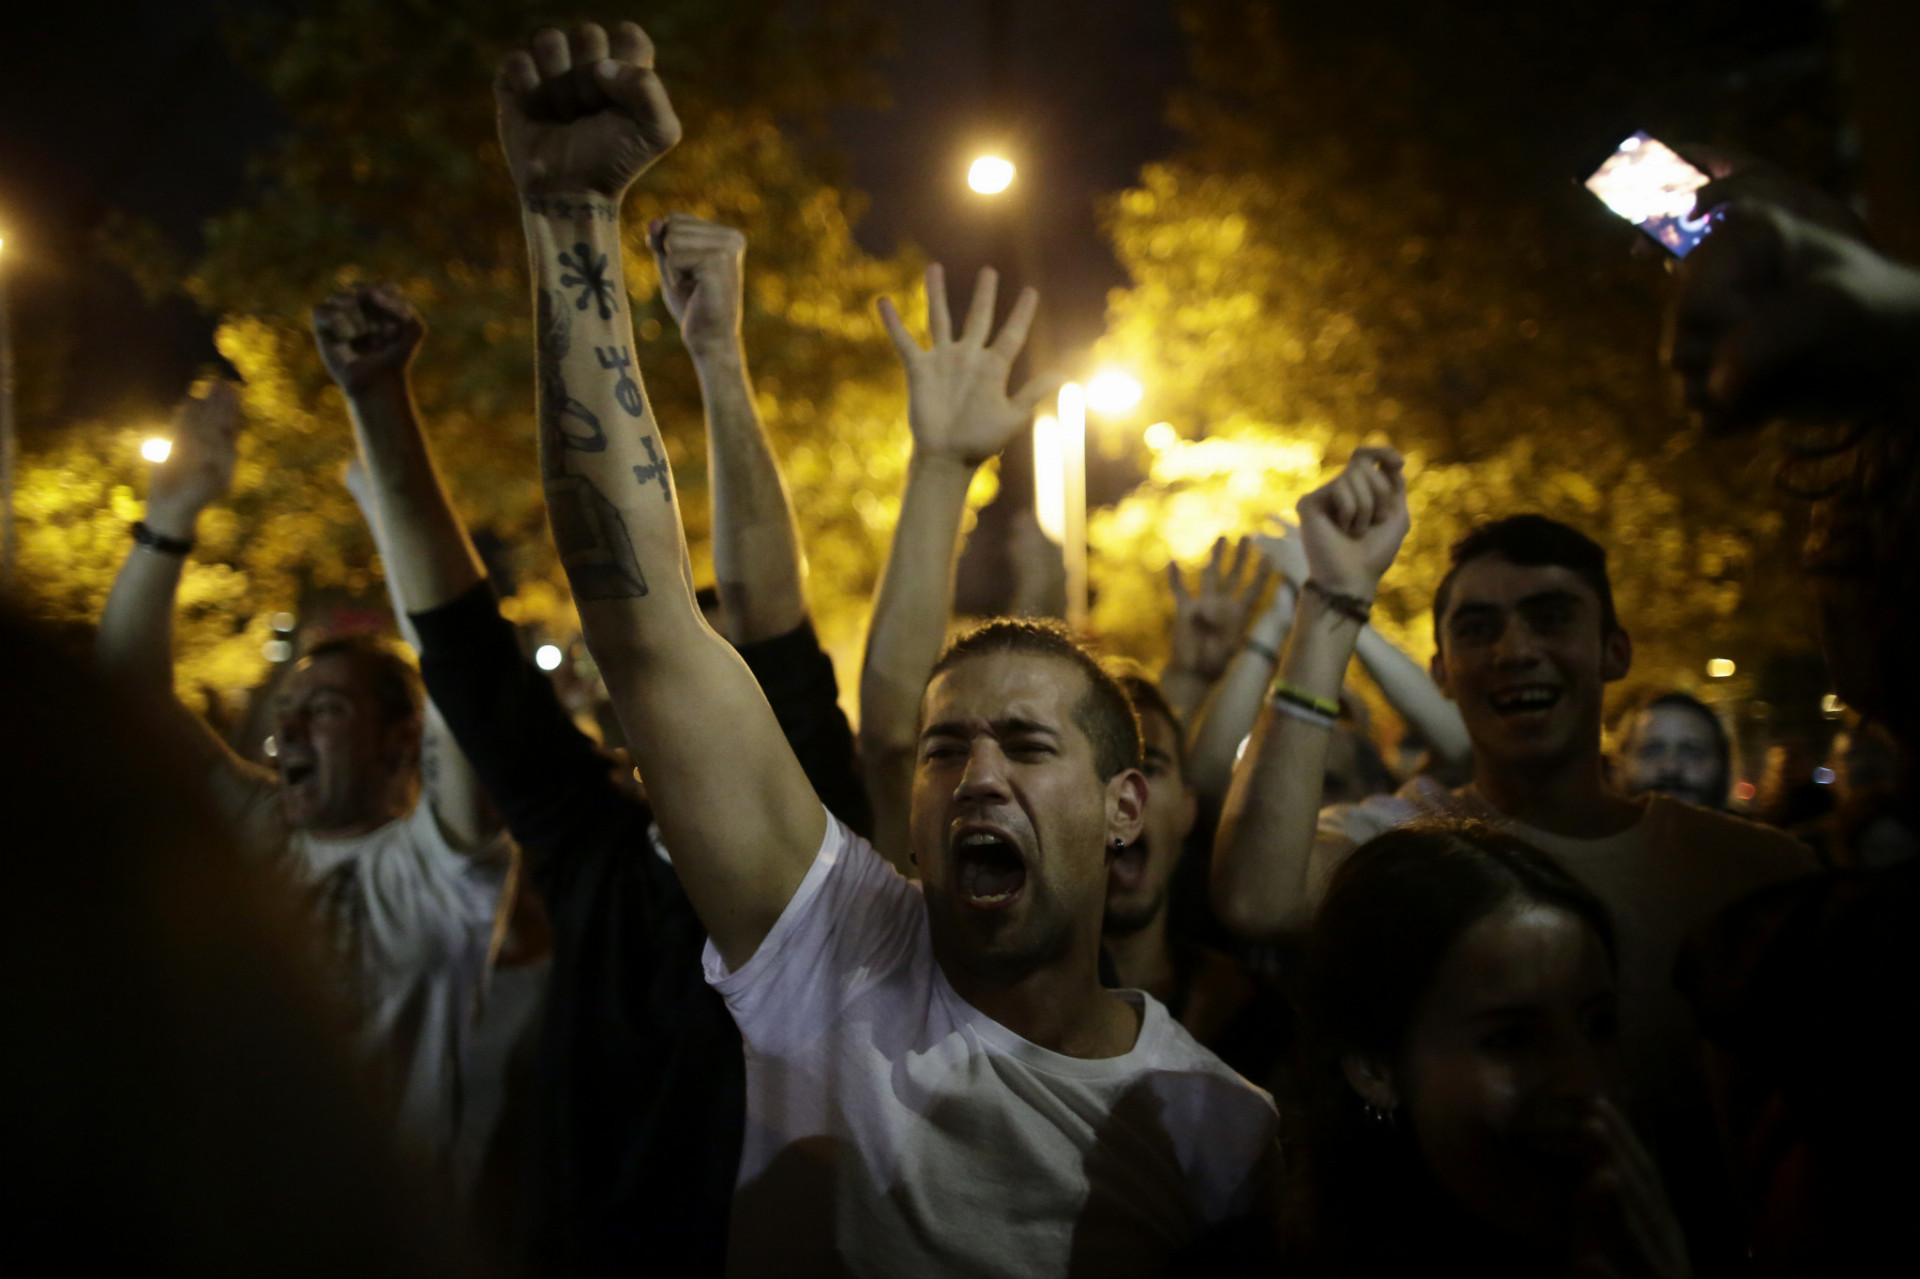 Stúpenci referenda oslavujú na uliciach v Barcelone po oficiálnom skončení referenda o nezávislosti Katalánska 1. októbra 2017. Pri zásahoch španielskej polície proti ľuďom, ktorí sa pokúšali hlasovať v plebiscite, utrpelo zranenia celkovo 844 ľudí a 33 policajtov, uviedla katalánska regionálna vláda.